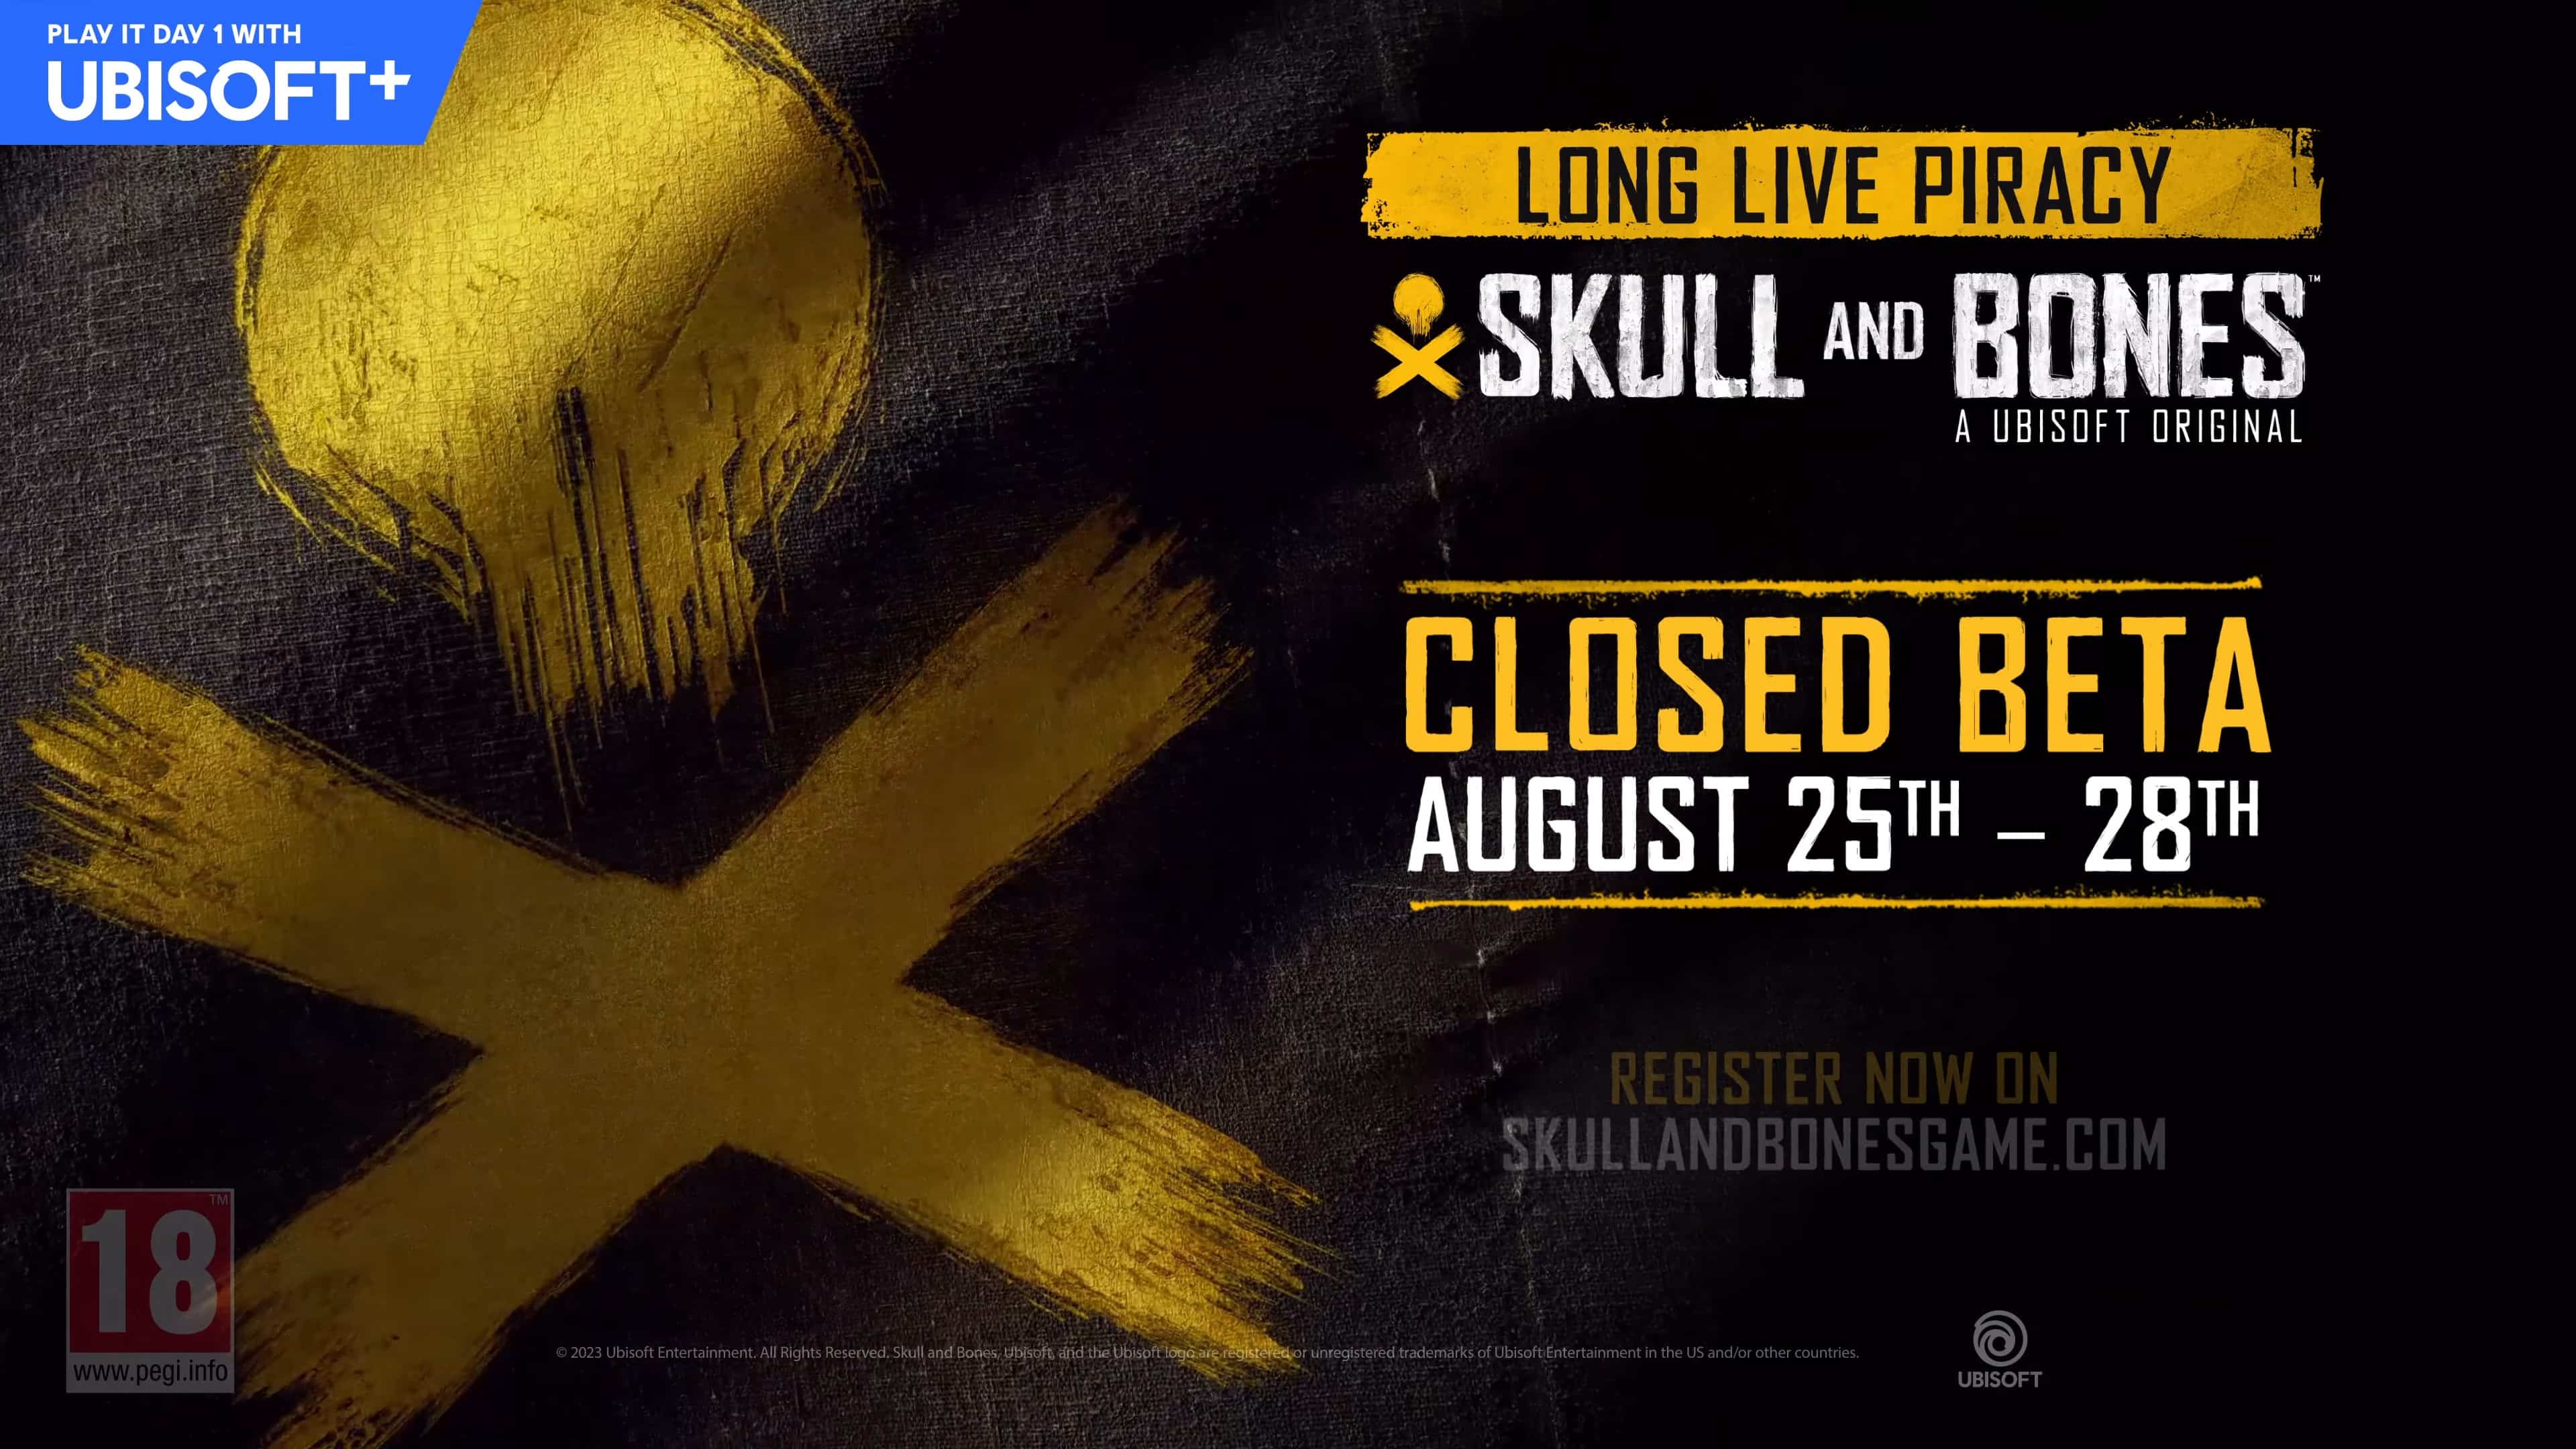 Una beta cerrada de Skull and Bones es anunciada para agosto